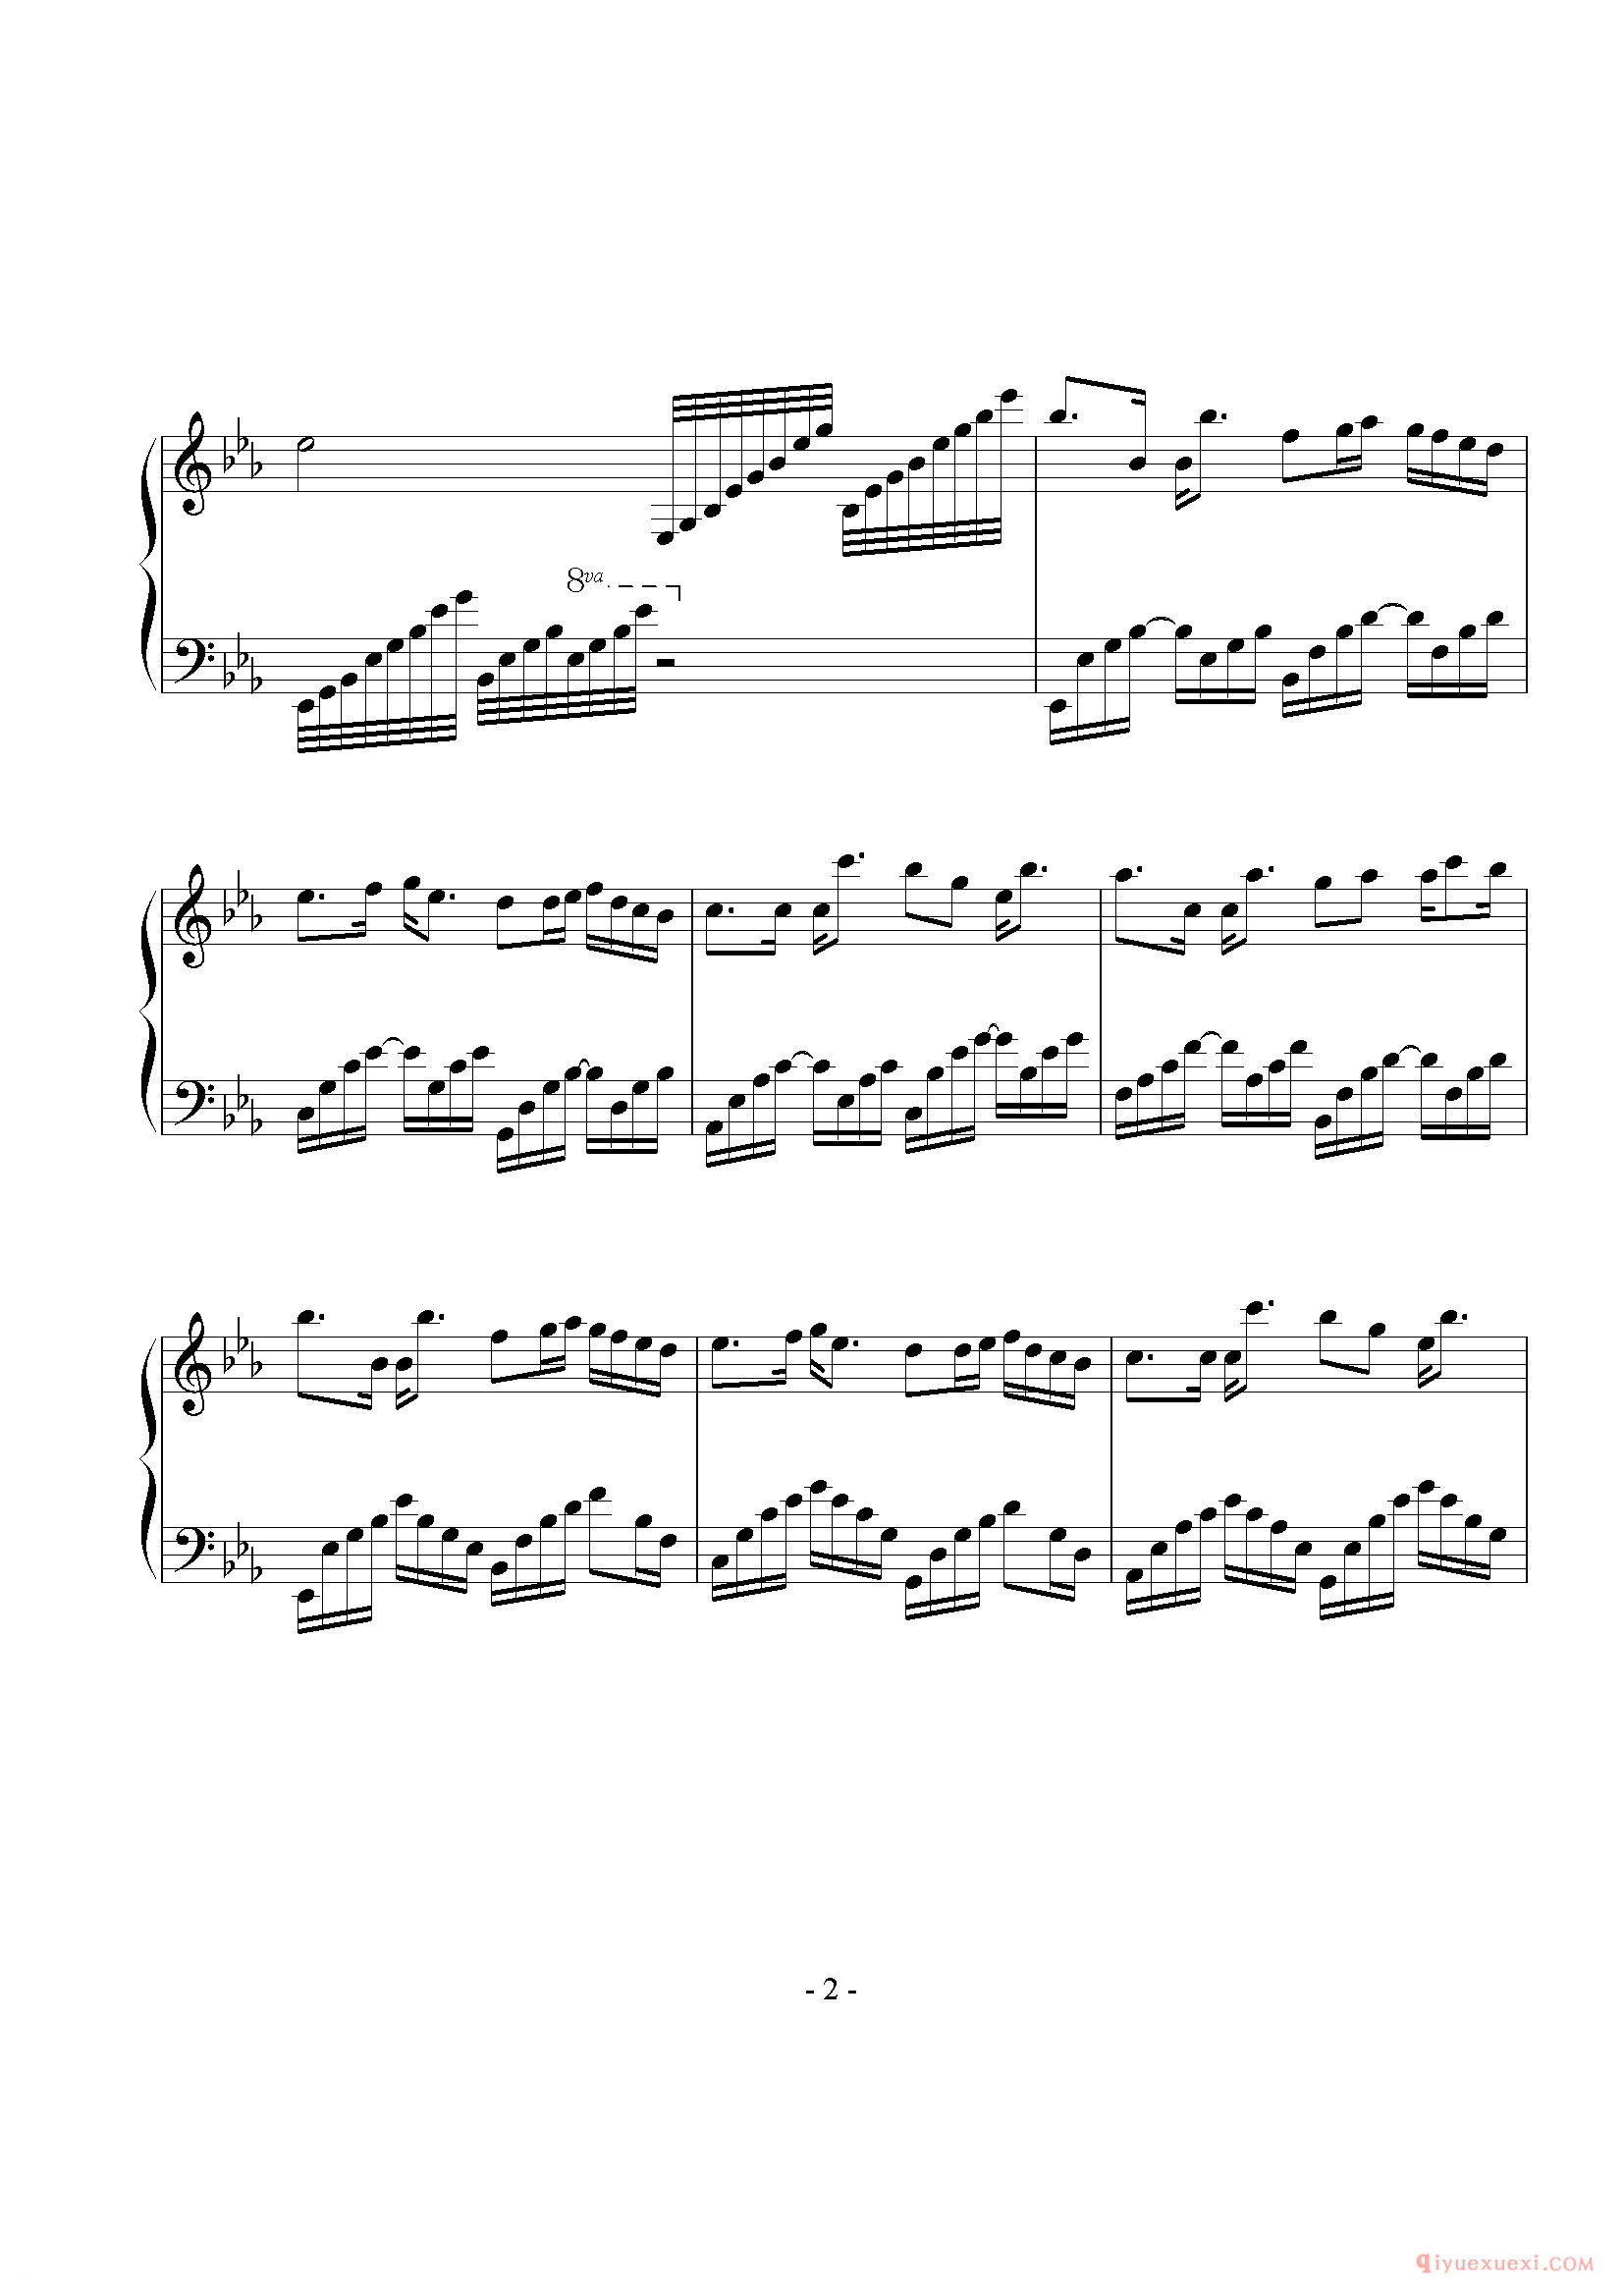 林俊杰歌曲《被风吹过的夏天》钢琴谱五线谱